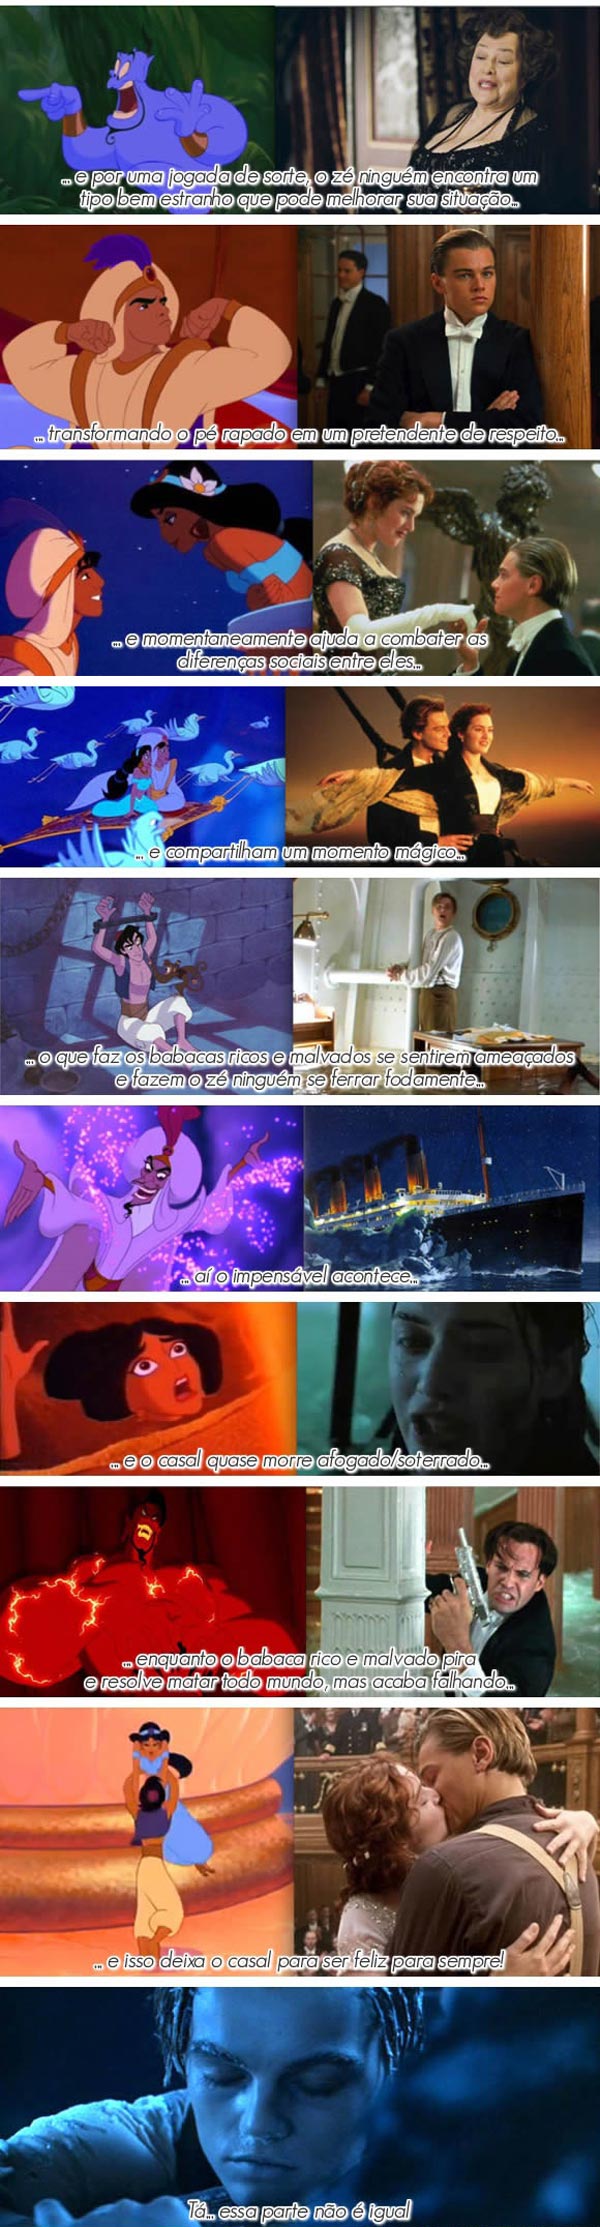 Alladin e Titanic são a mesma história 